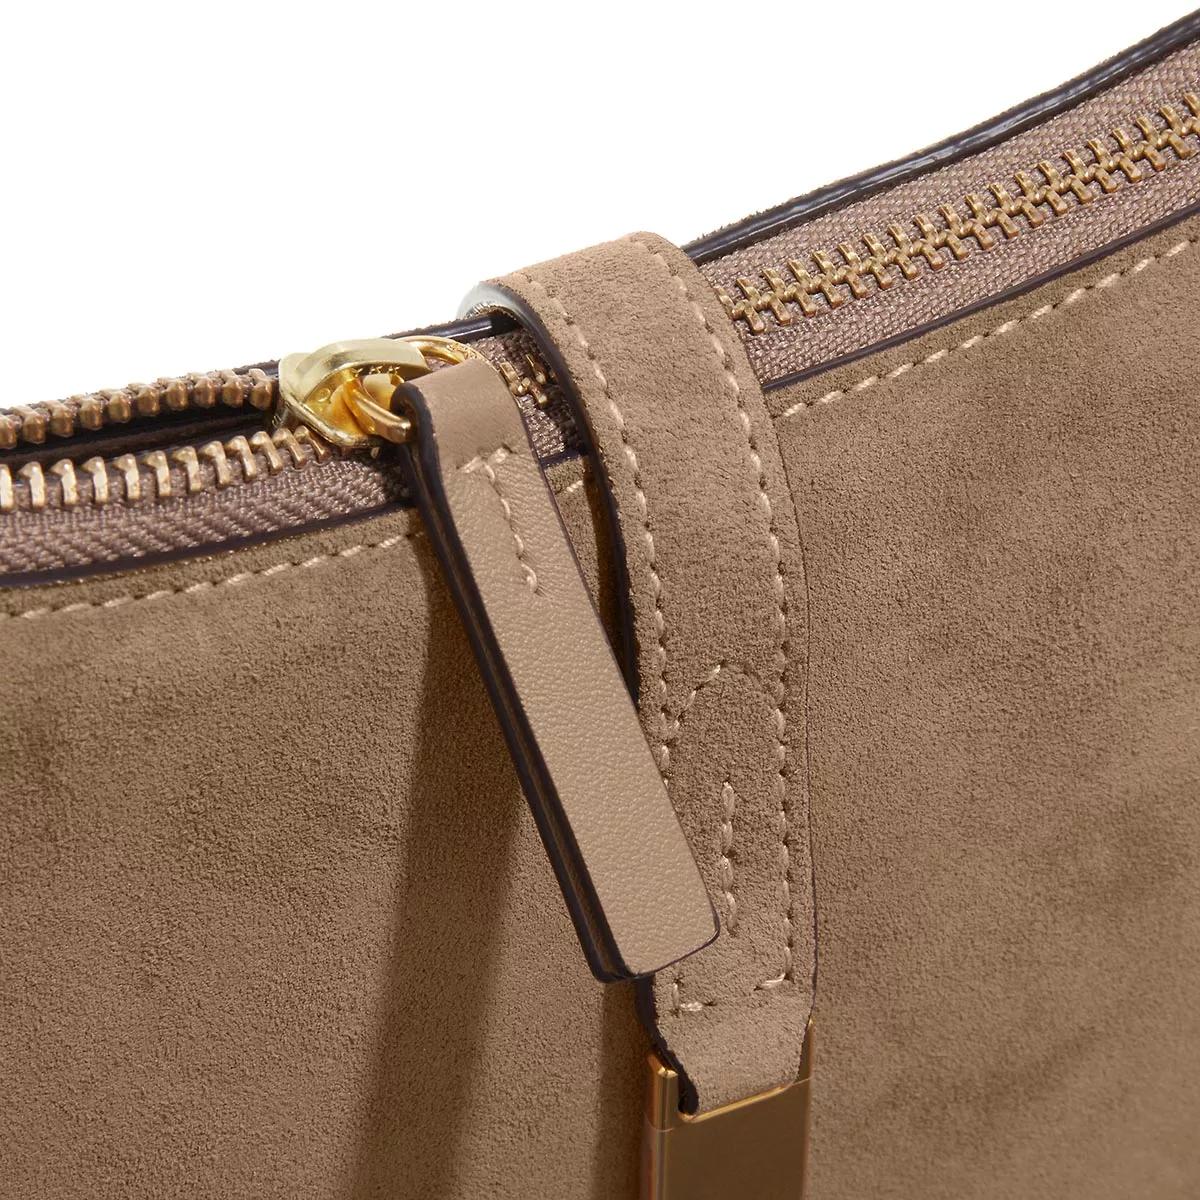 Polo Ralph Lauren Hobo bags Shoulder Bag Small in bruin